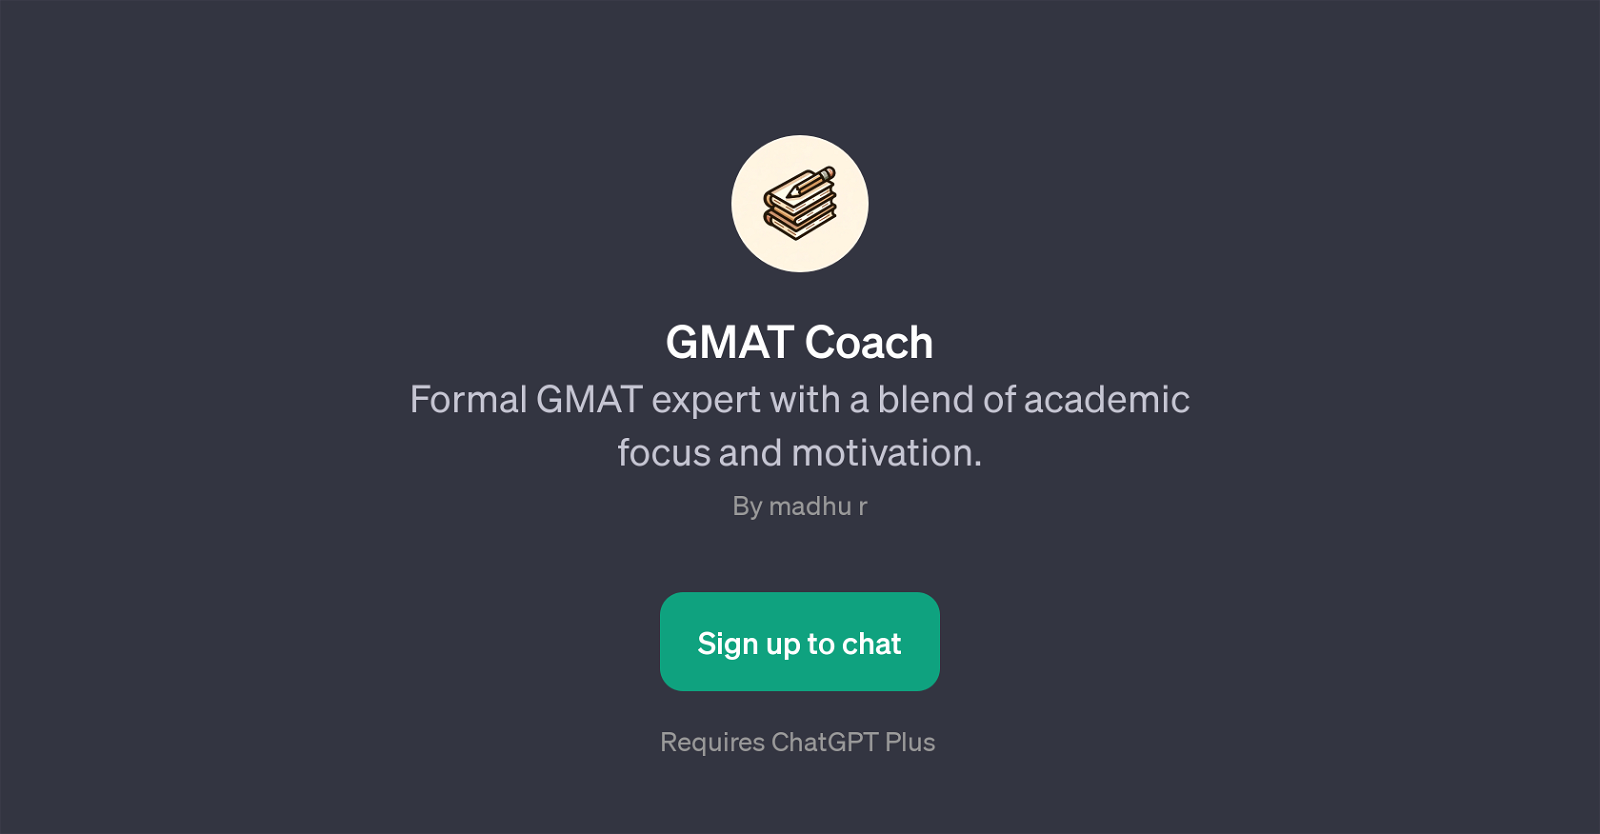 GMAT Coach website